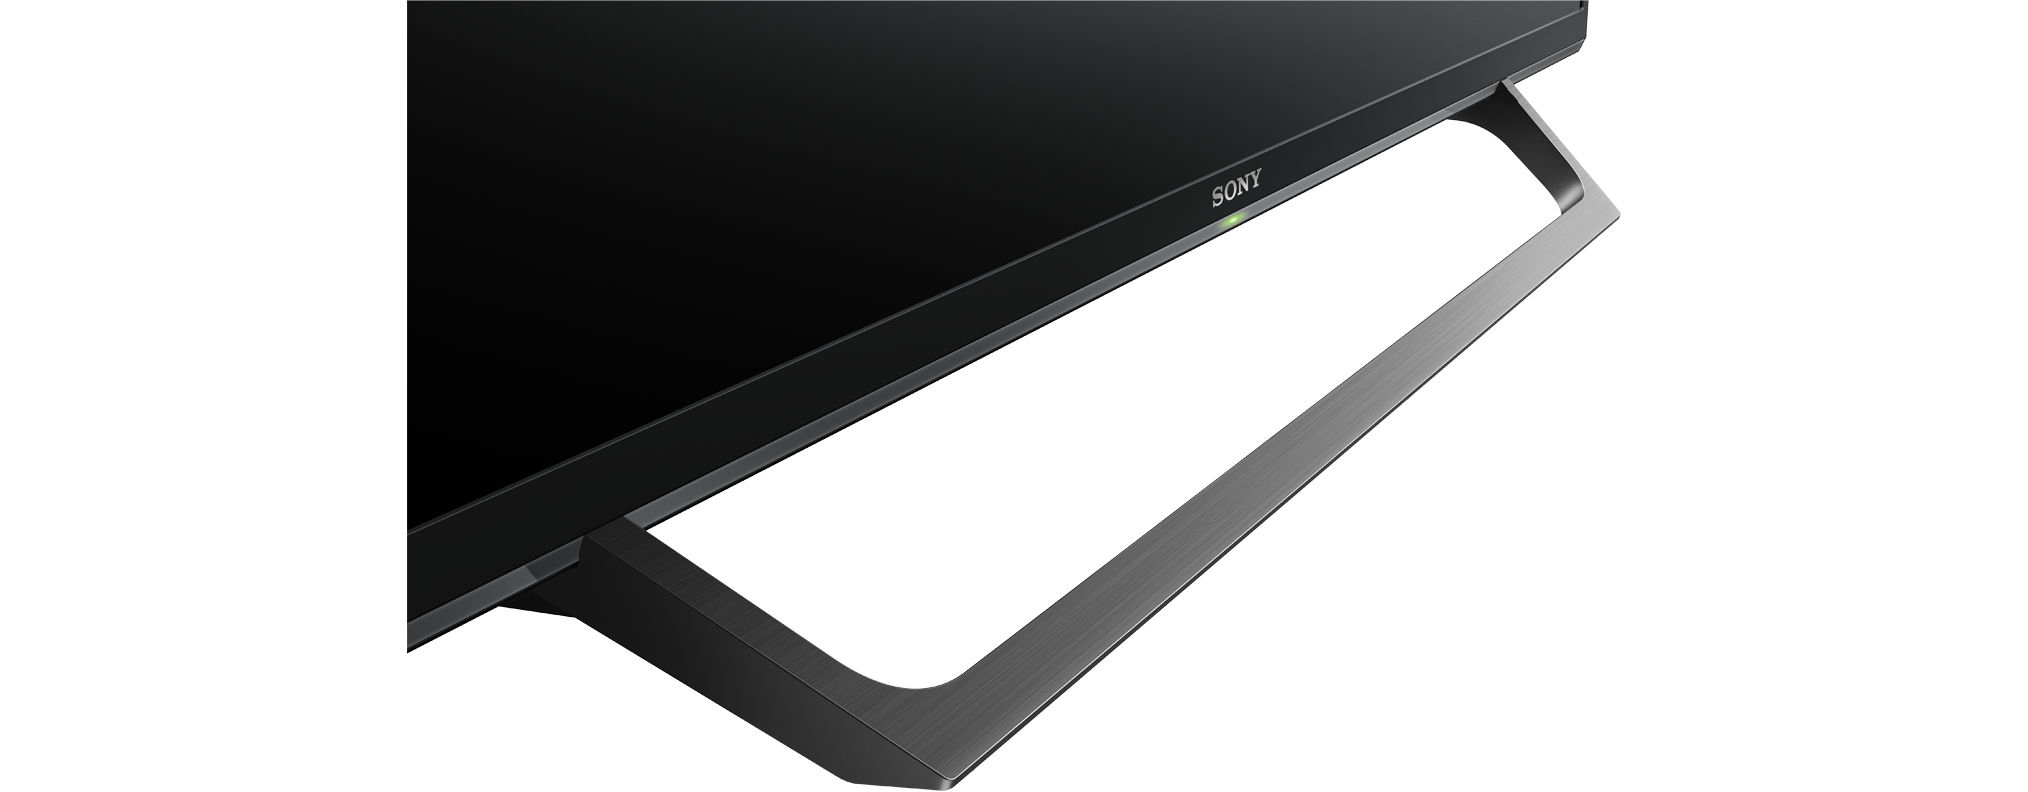 SONY KDL-32W6605 LED TV (Flat, SMART Zoll TV, HD-ready, Linux) cm, / 80 32